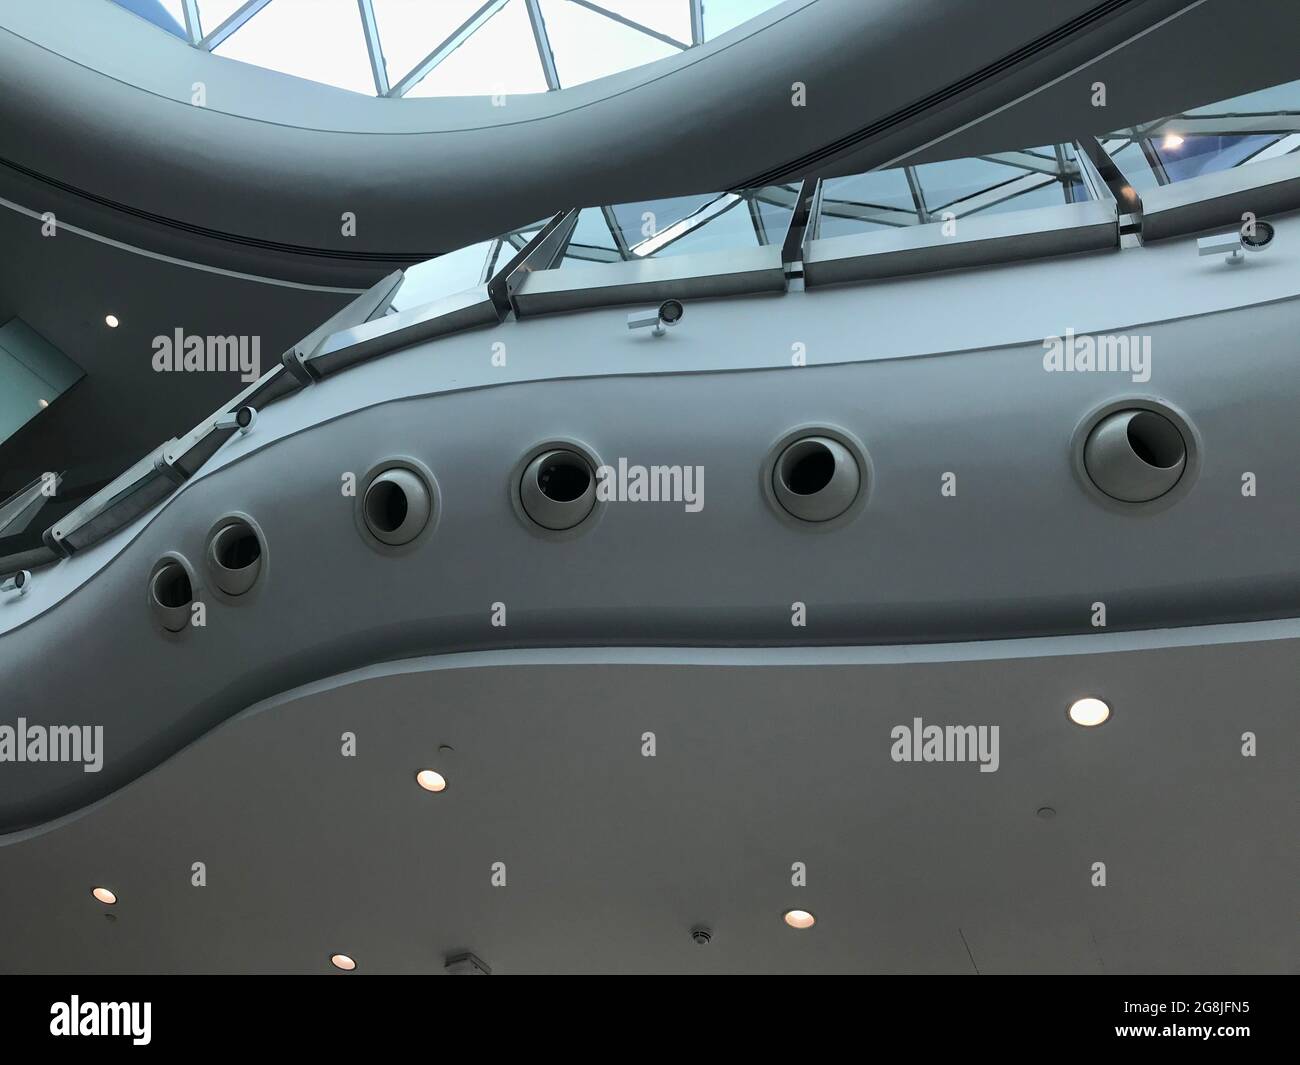 La buse ronde à jet de climatisation ronde en aluminium diffuse les diffuseurs à faux niveau de plafond intérieur travaille pour le hall polyvalent d'une énorme ma shopping Banque D'Images